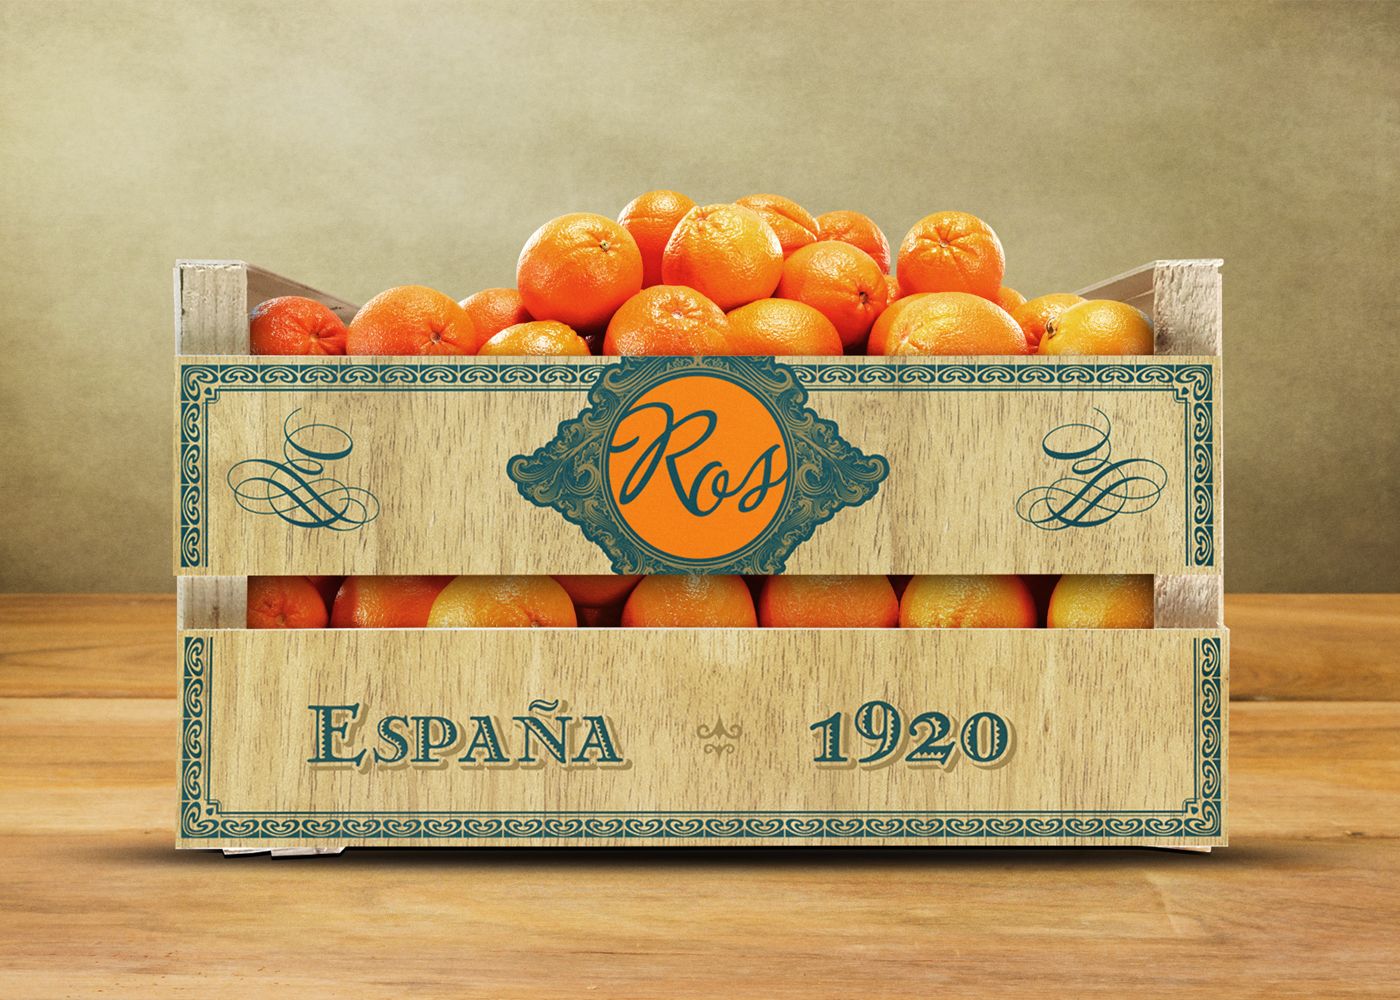 Caja de madera de clementinas Ros - Eclectick Studio